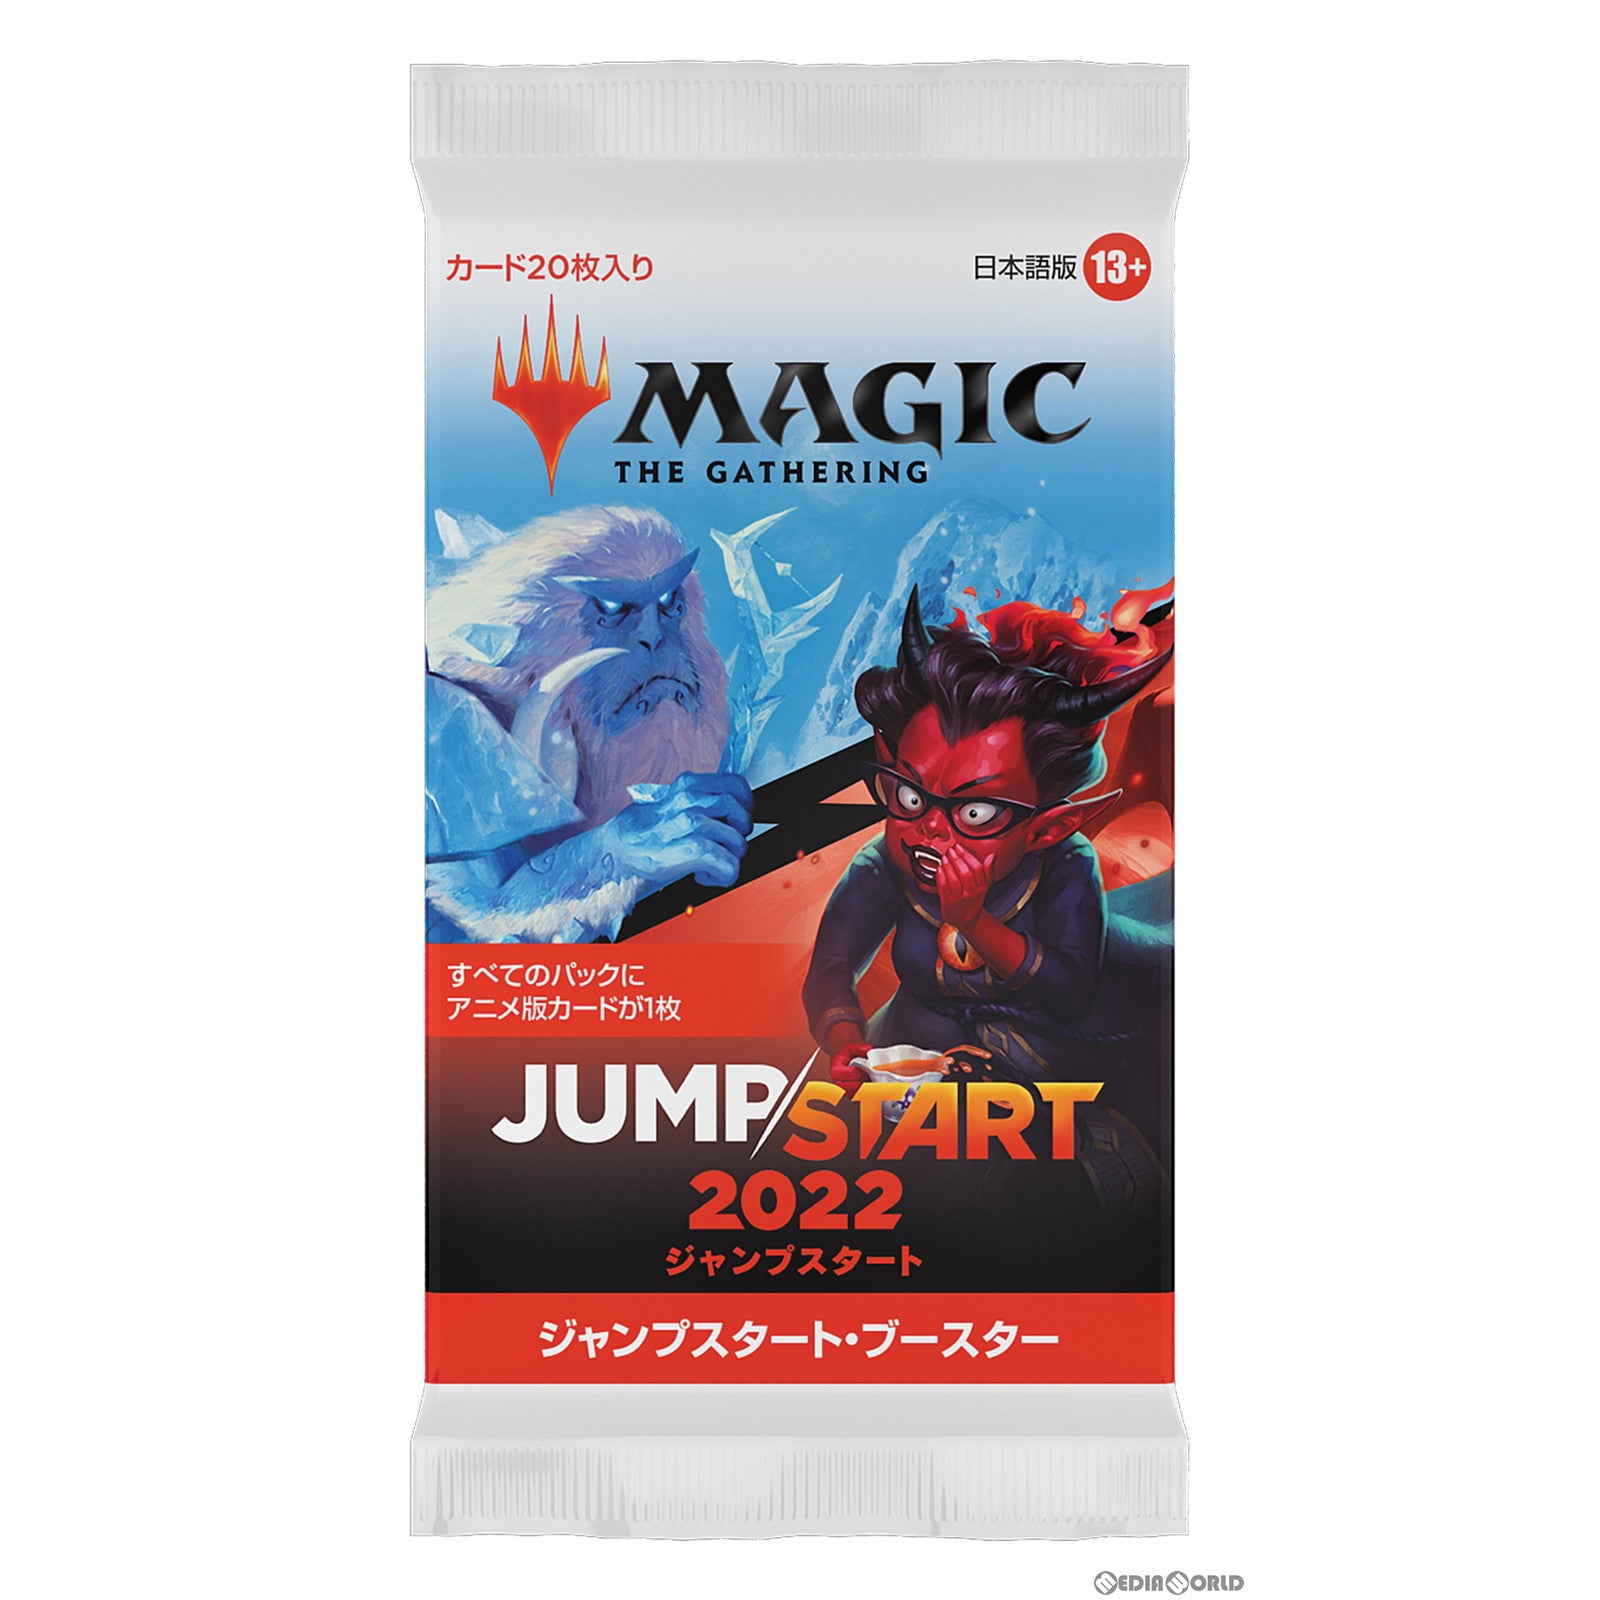 【新品即納】[TCG]MTG マジック:ザ・ギャザリング ジャンプスタート2022(Jumpstart 2022) ジャンプスタート・ブースター(日本語版)(20221202)